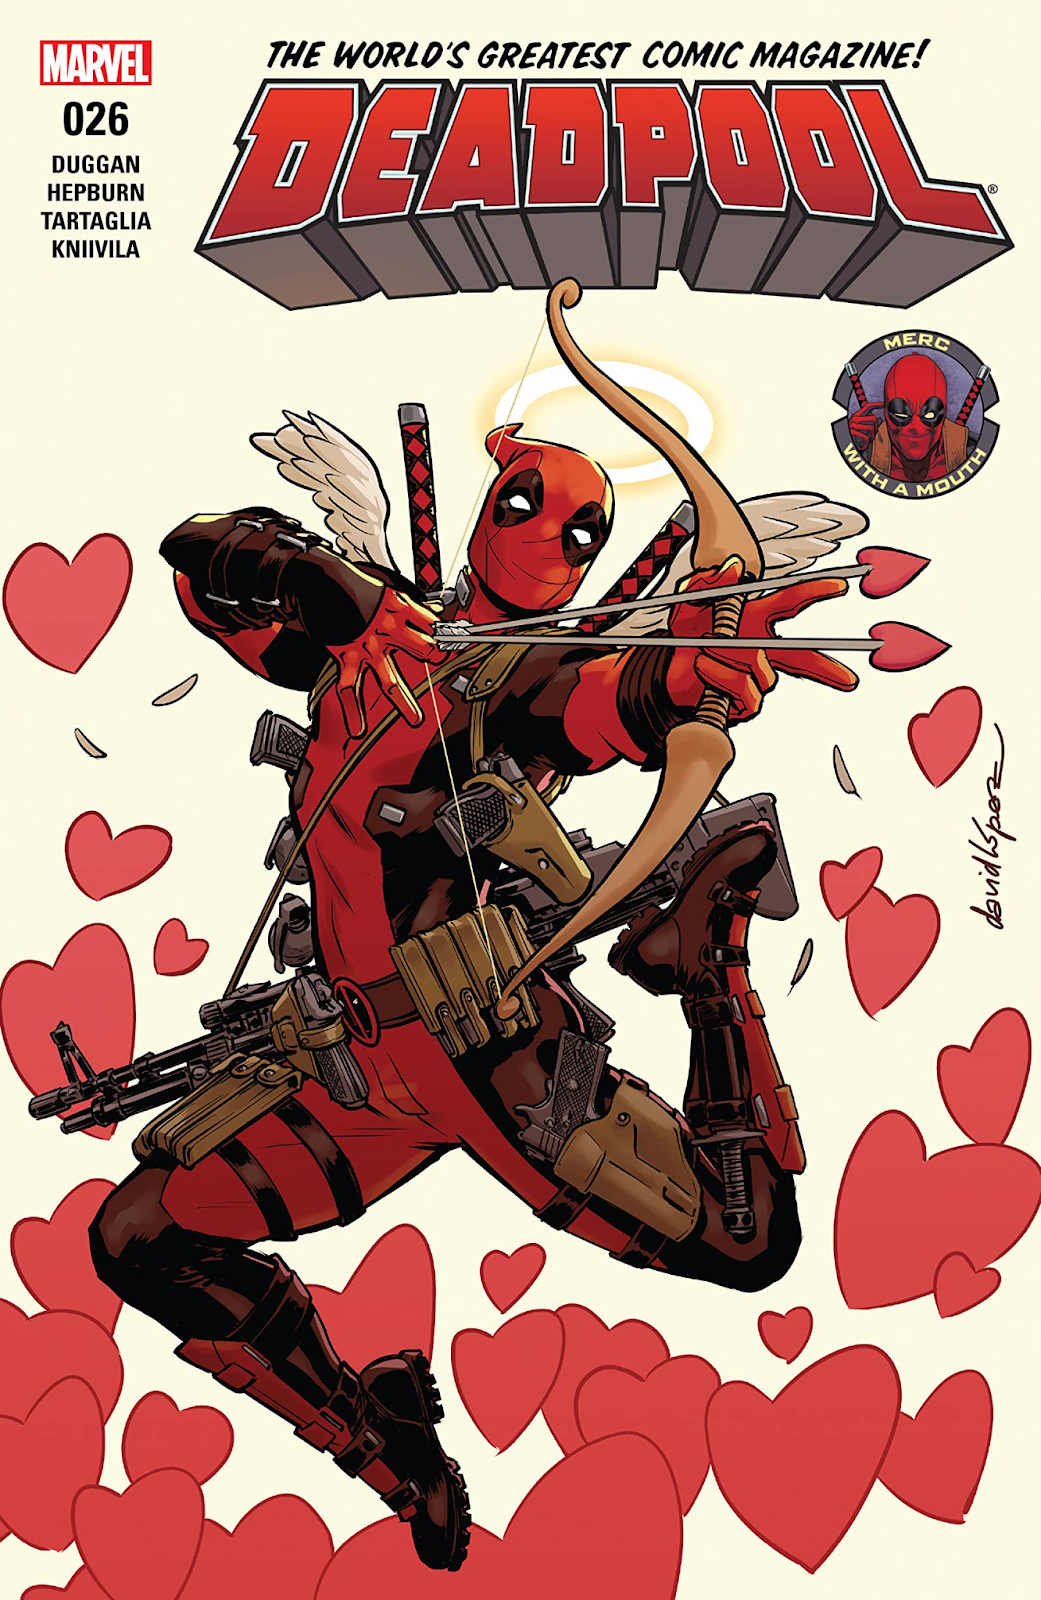 Capa de Quadrinhos do Deadpool